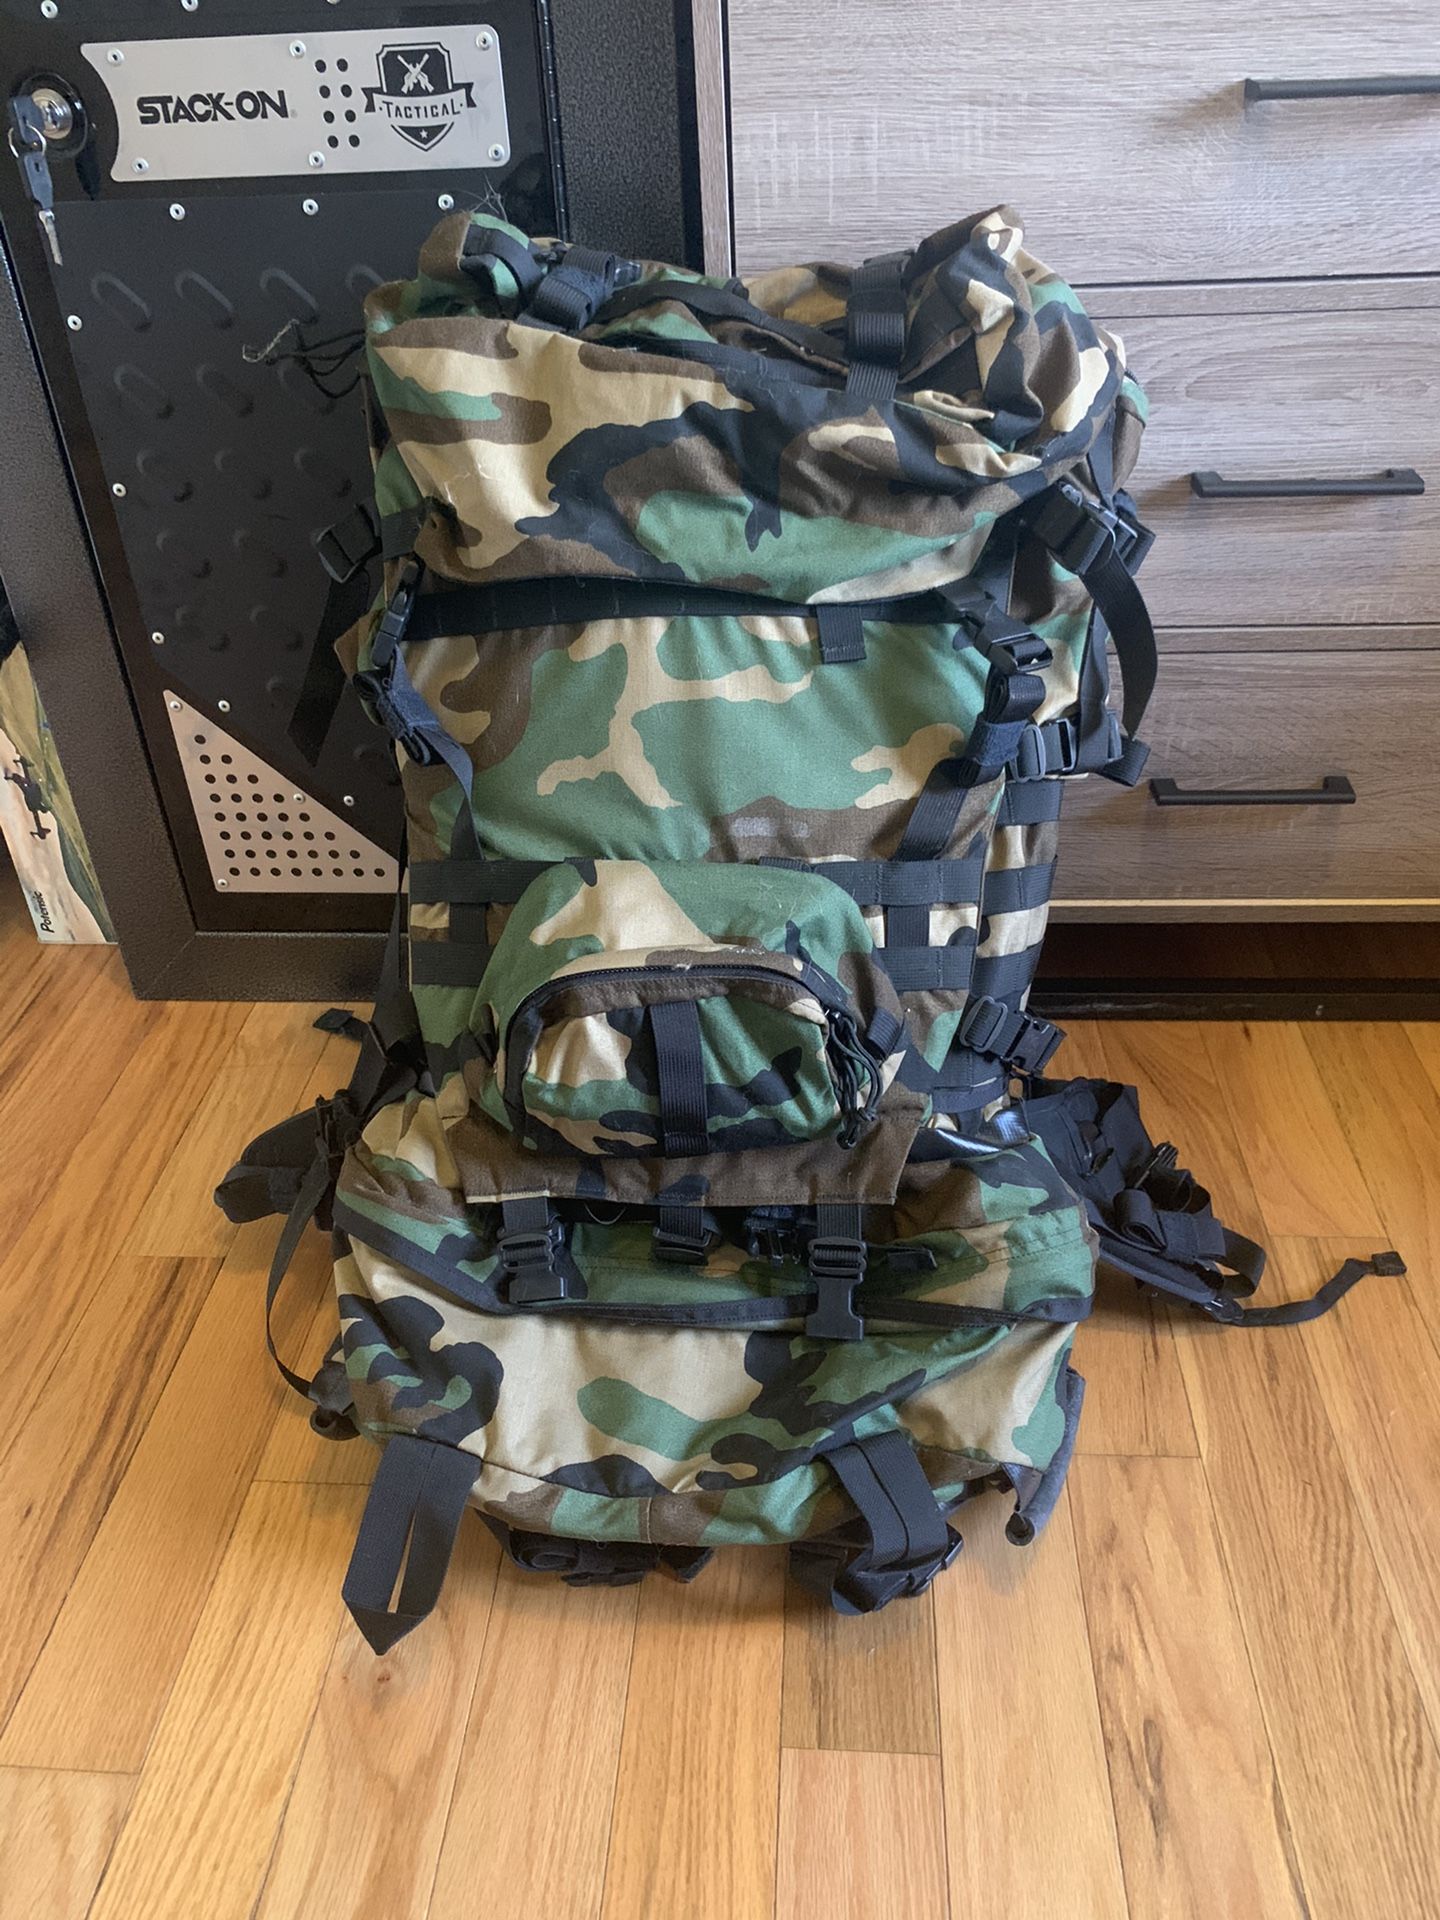 Backpacking/Hiking ruck sack